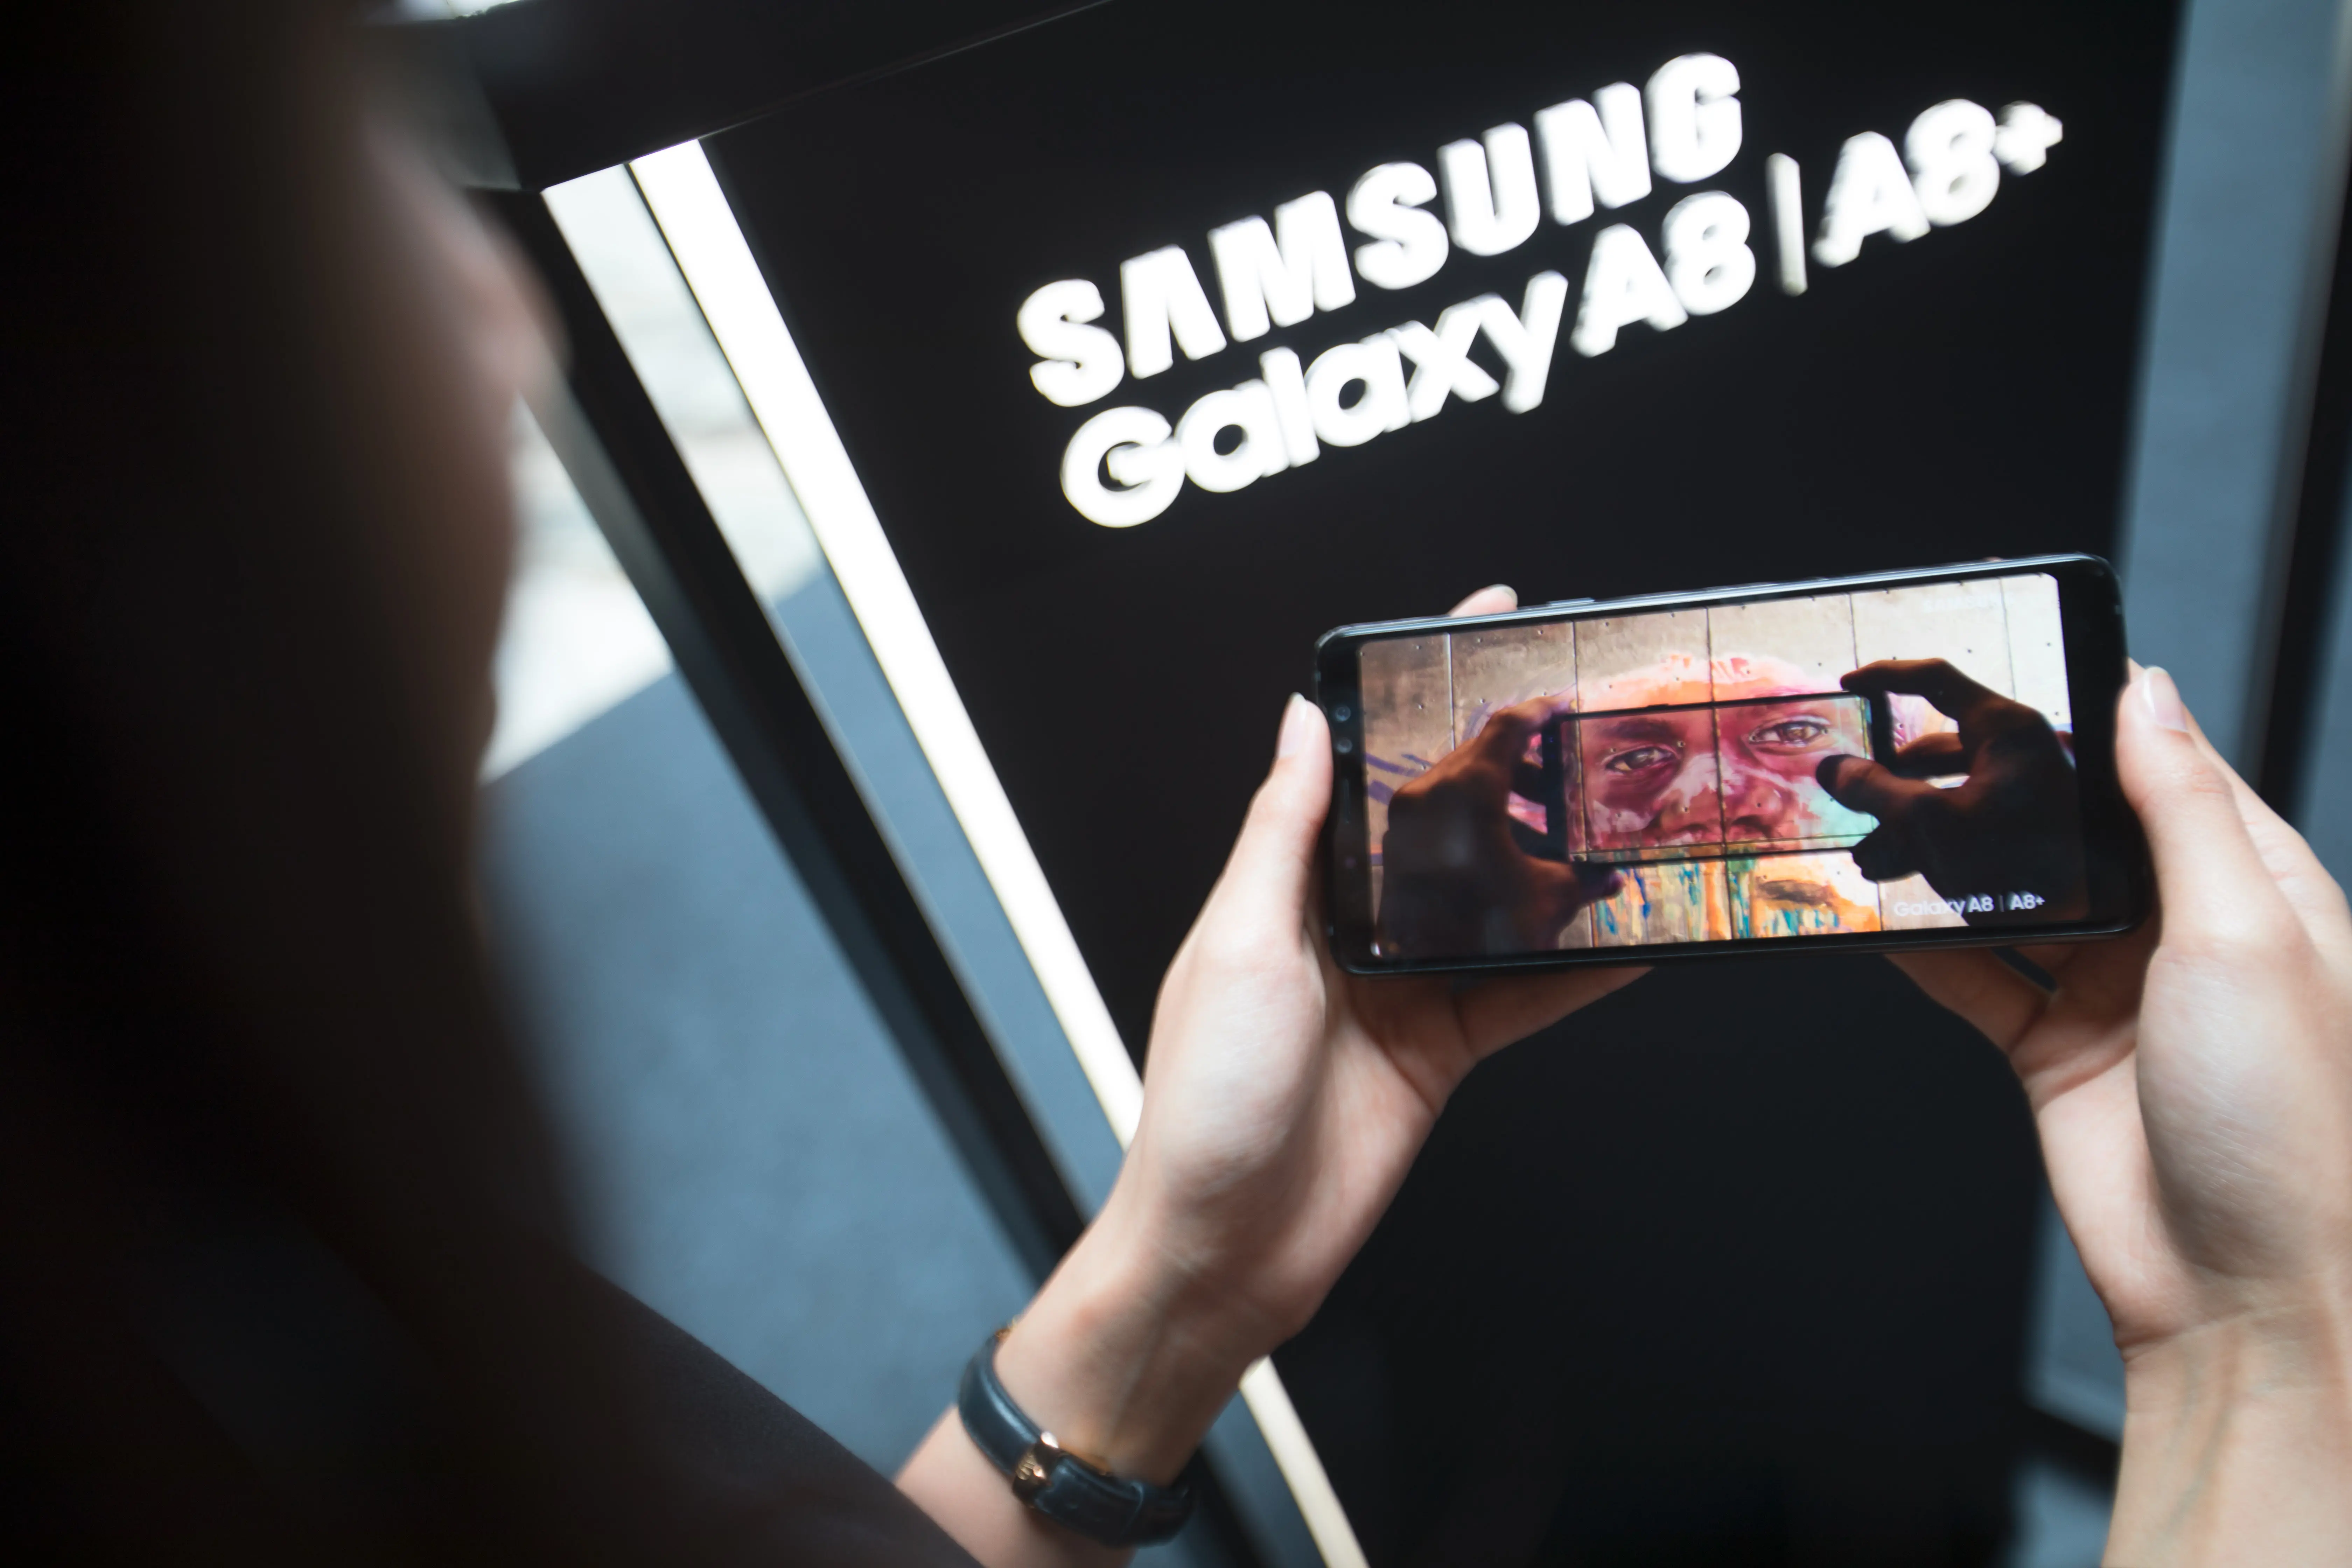 Konsumen diperkenankan menjajal fitur pada Galaxy A8 dan Galaxy A8+ di ajang consumer launch (Foto: Dokumentasi Samsung)